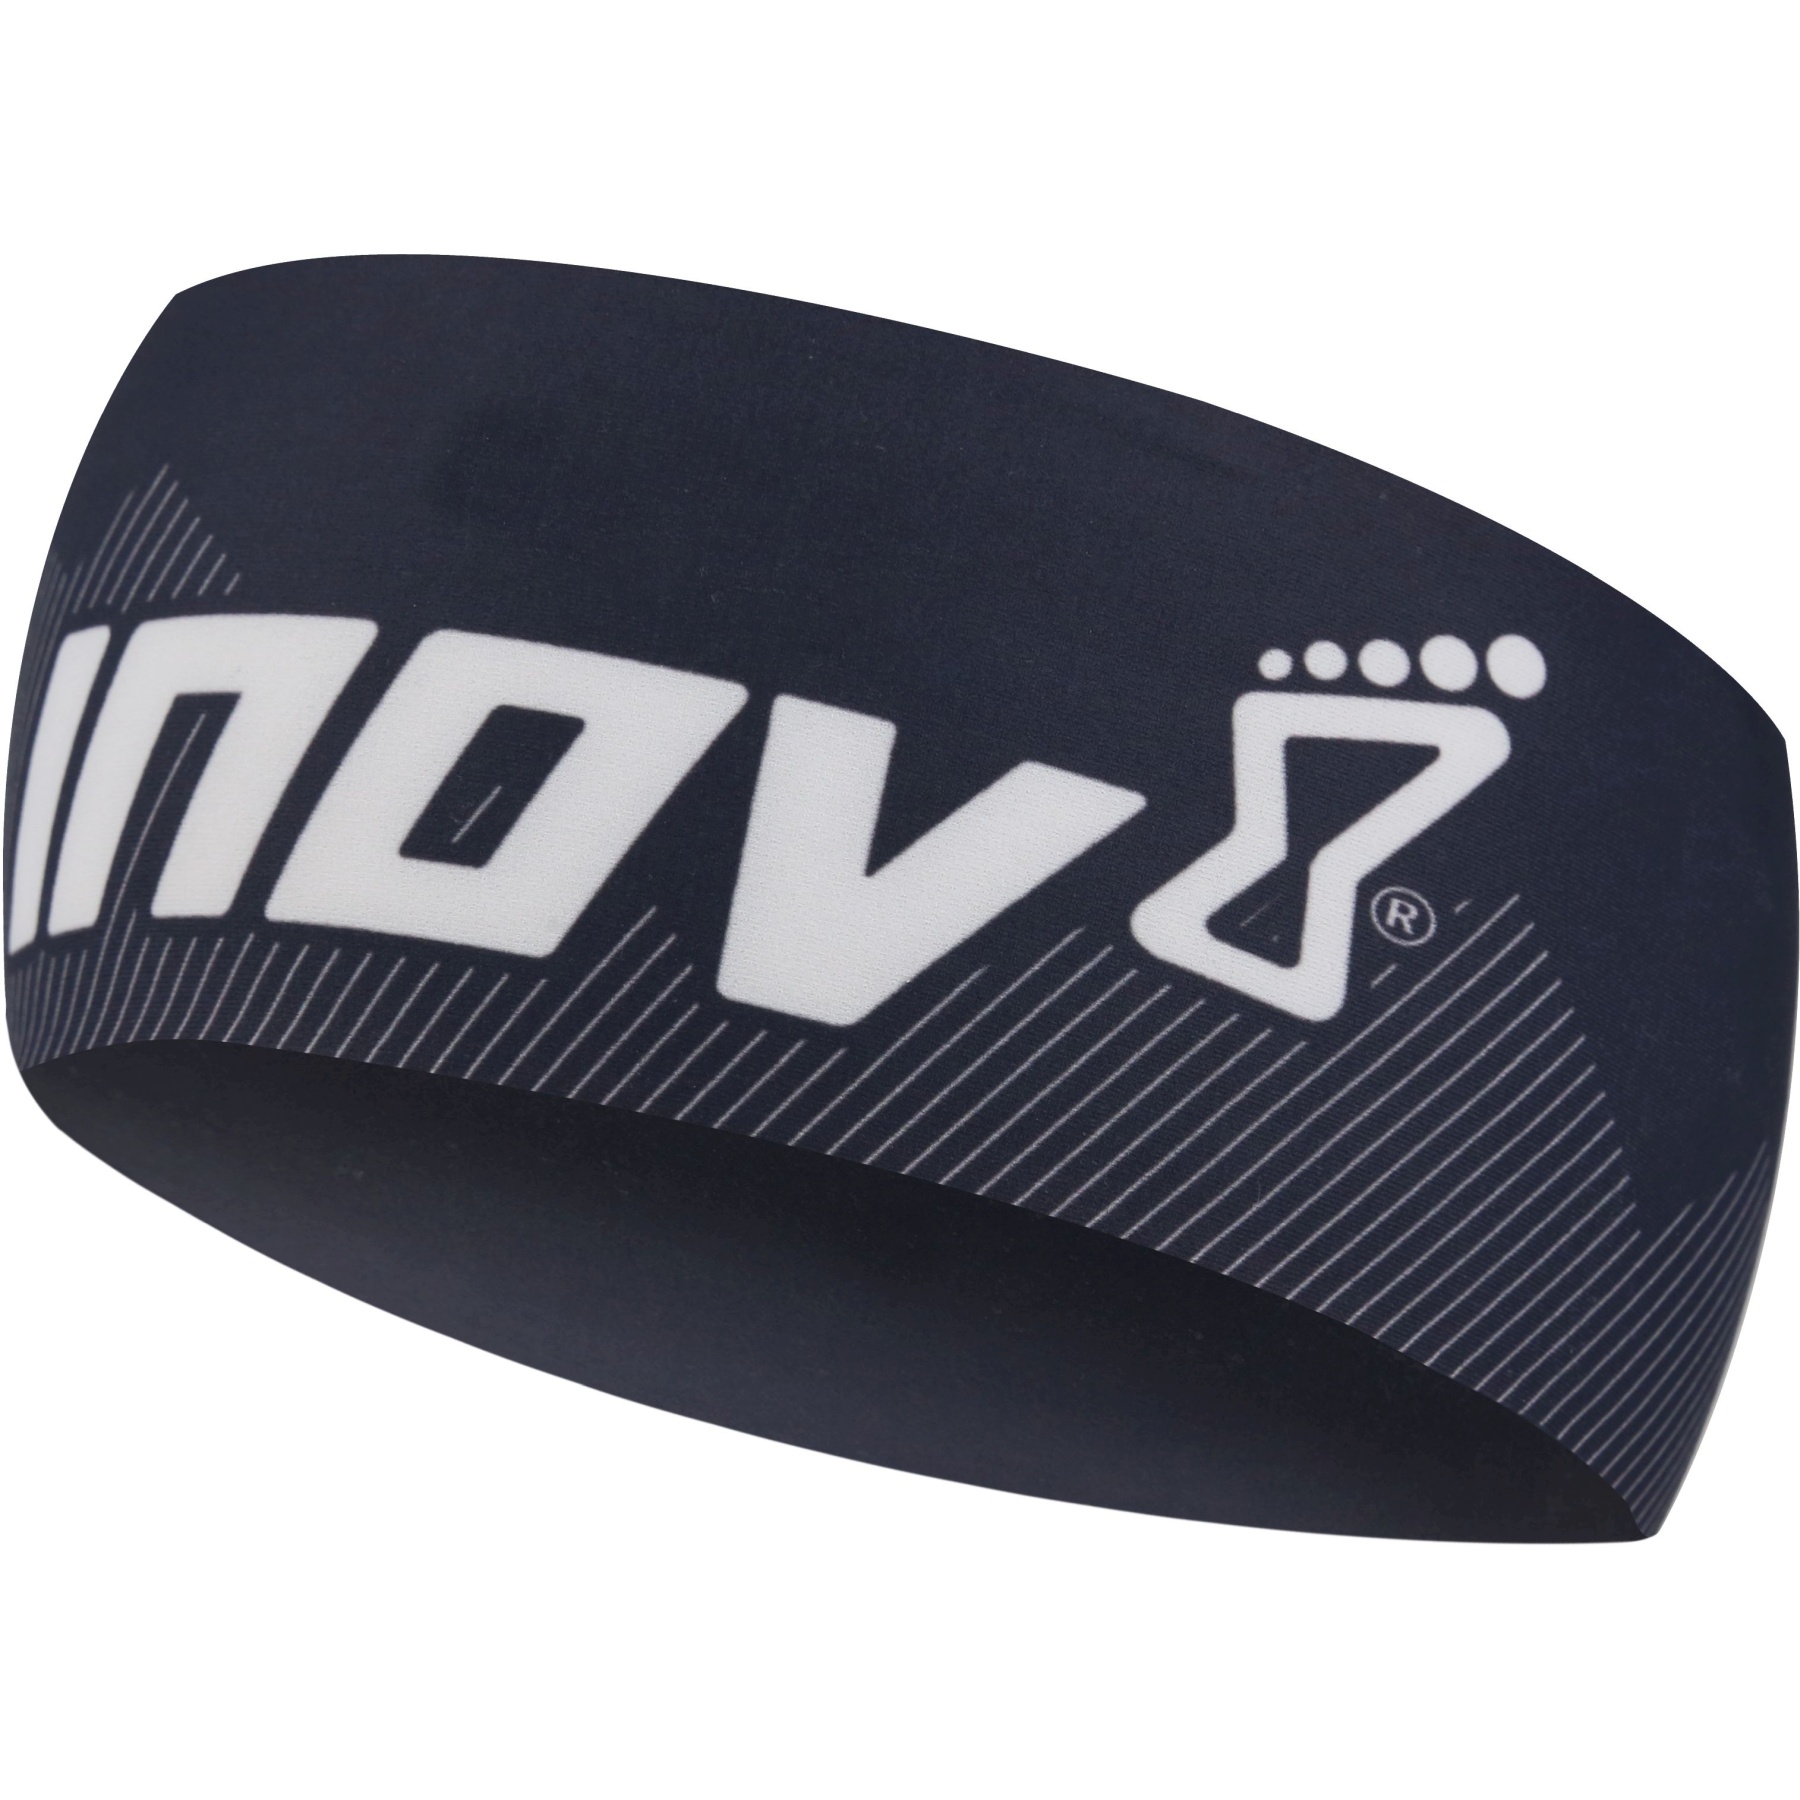 Bild von Inov-8 Race Elite Stirnband - schwarz/weiß